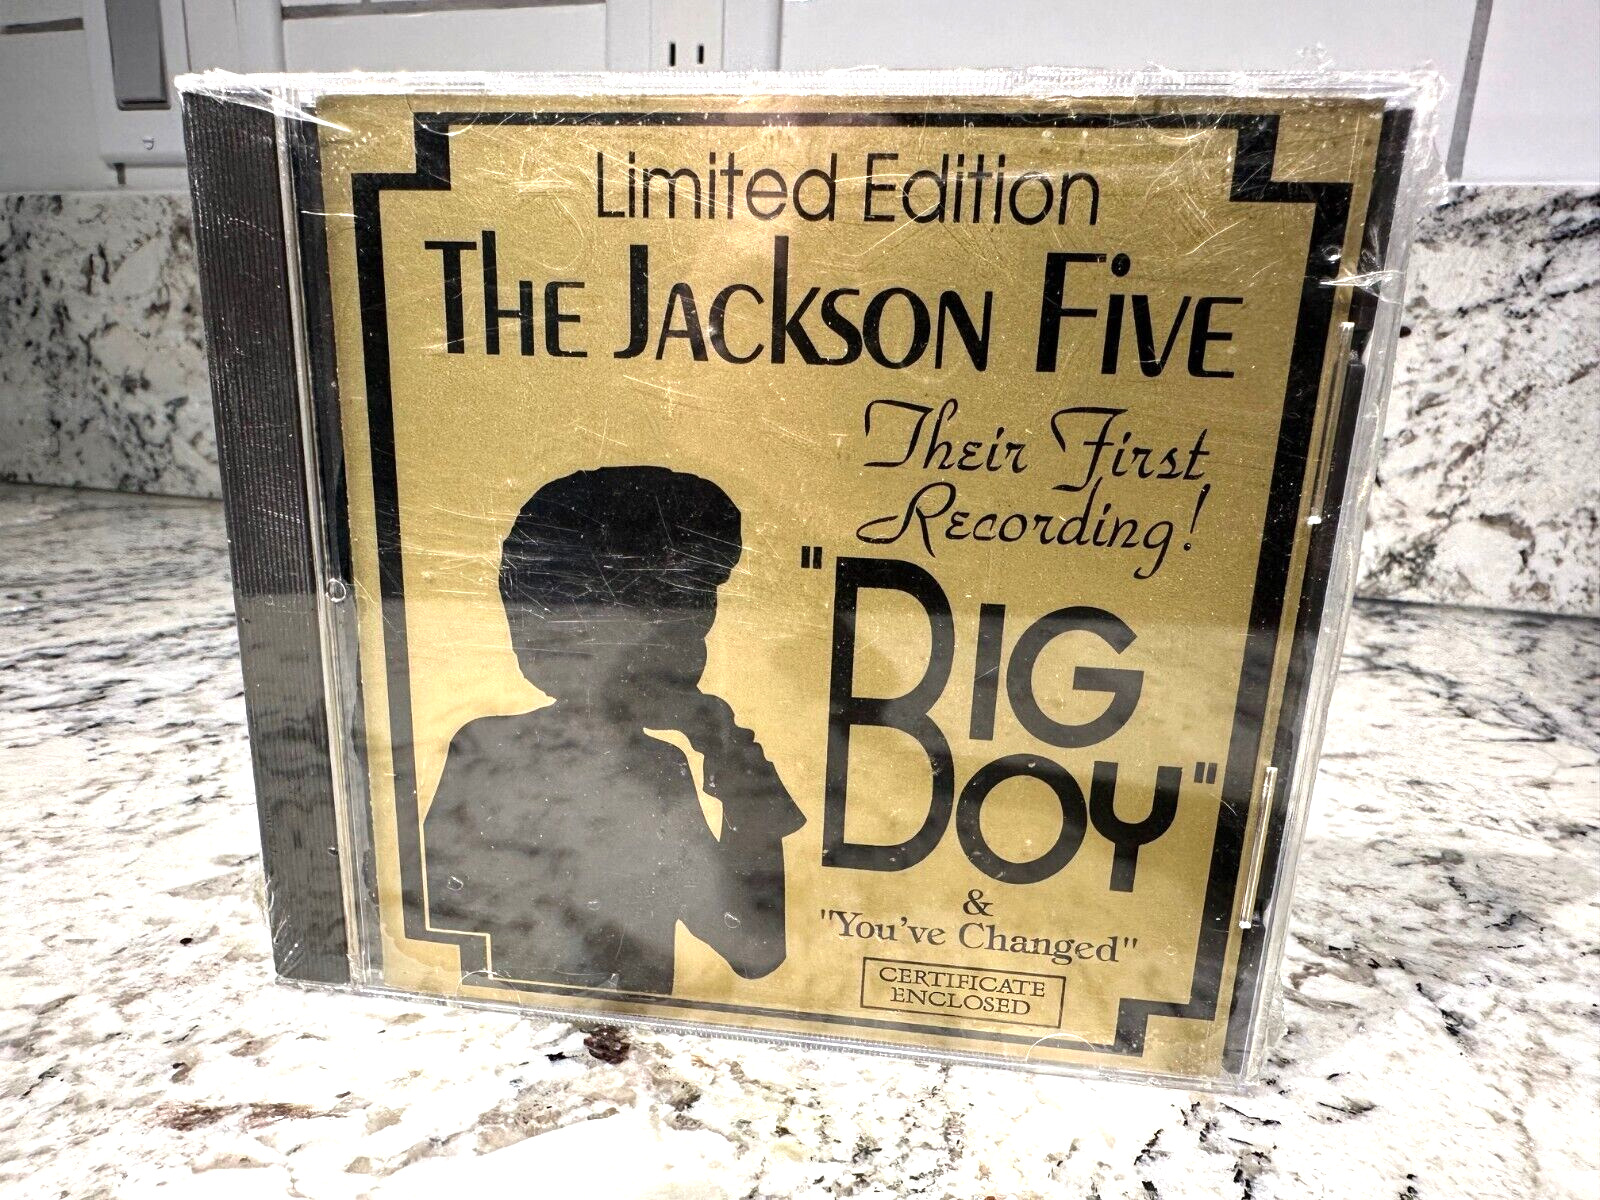 BIG BOY Single Vintage Limited Edition The Jackson 5 CD 1995 Sealed Shrink NOS